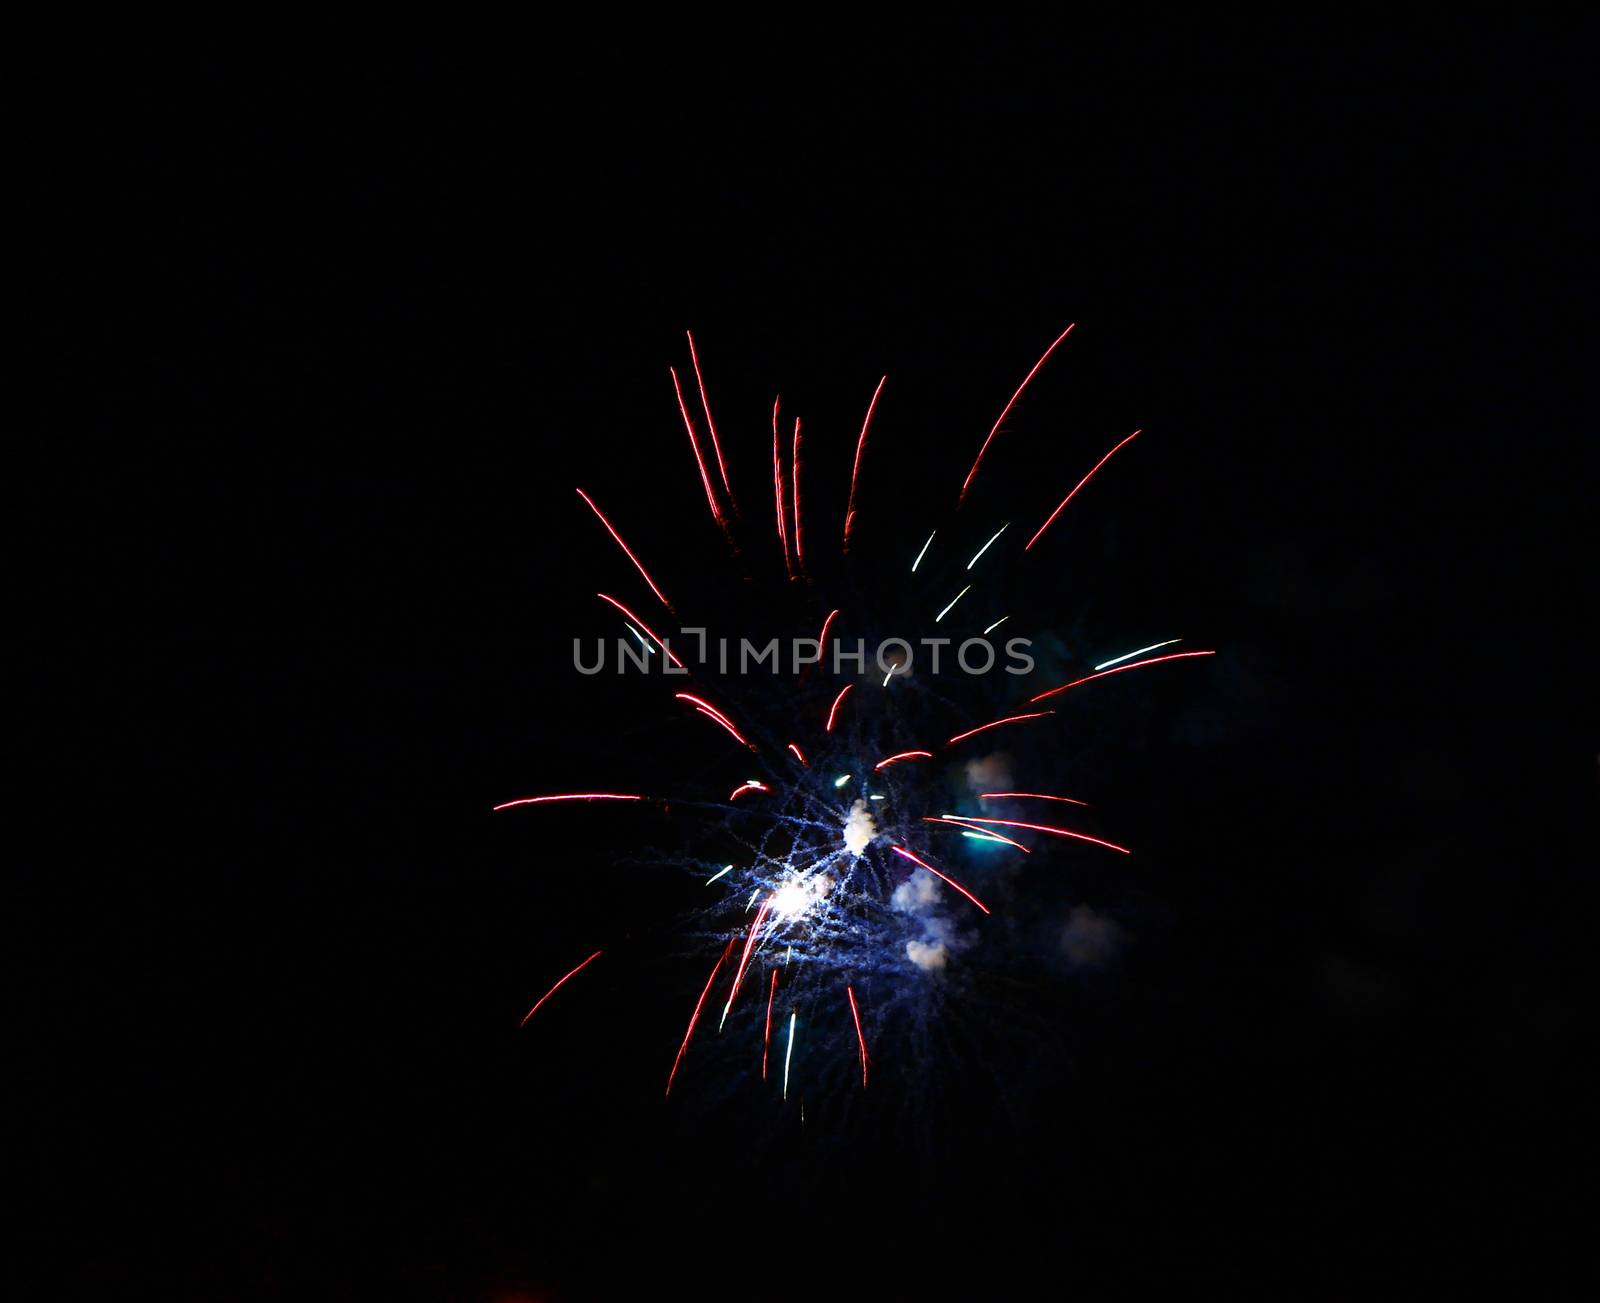 Celebration firework in the black night sky